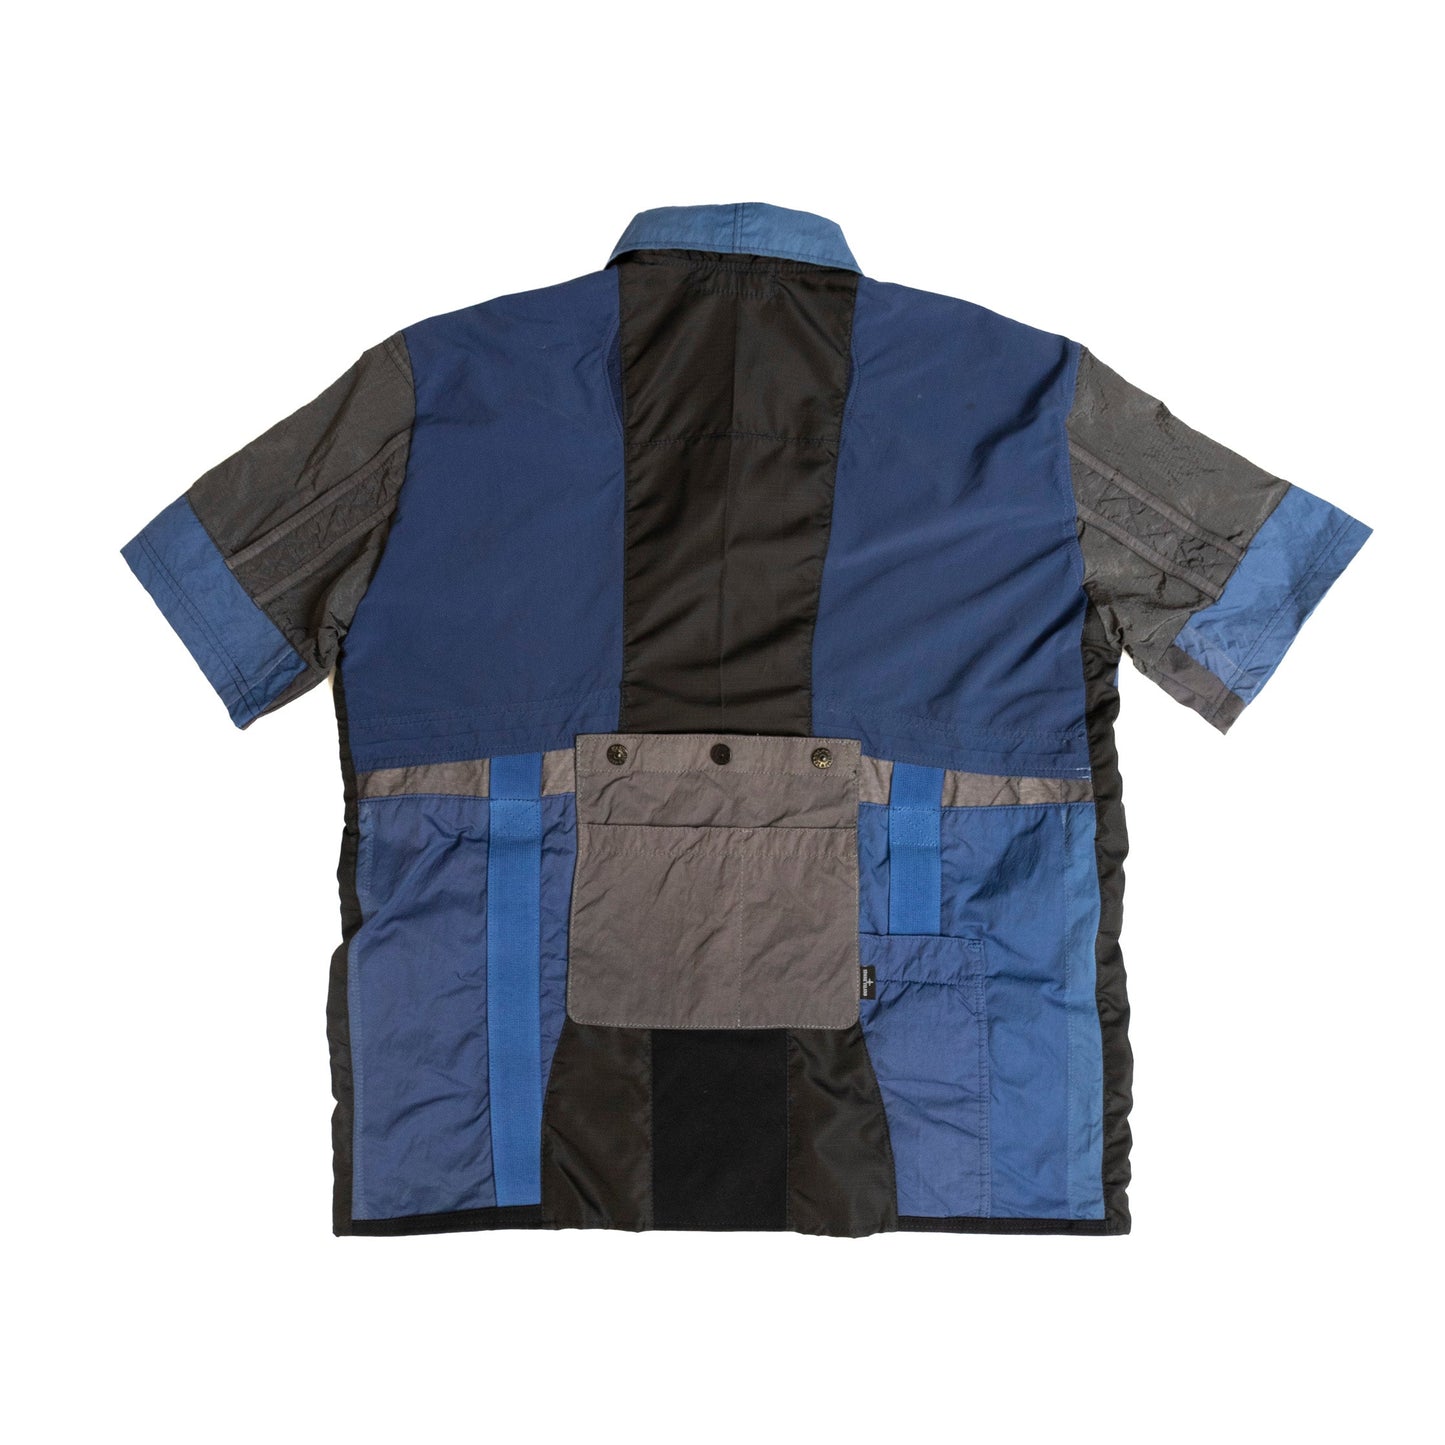 VT Rework : Stone Island Tech Zip Shirt